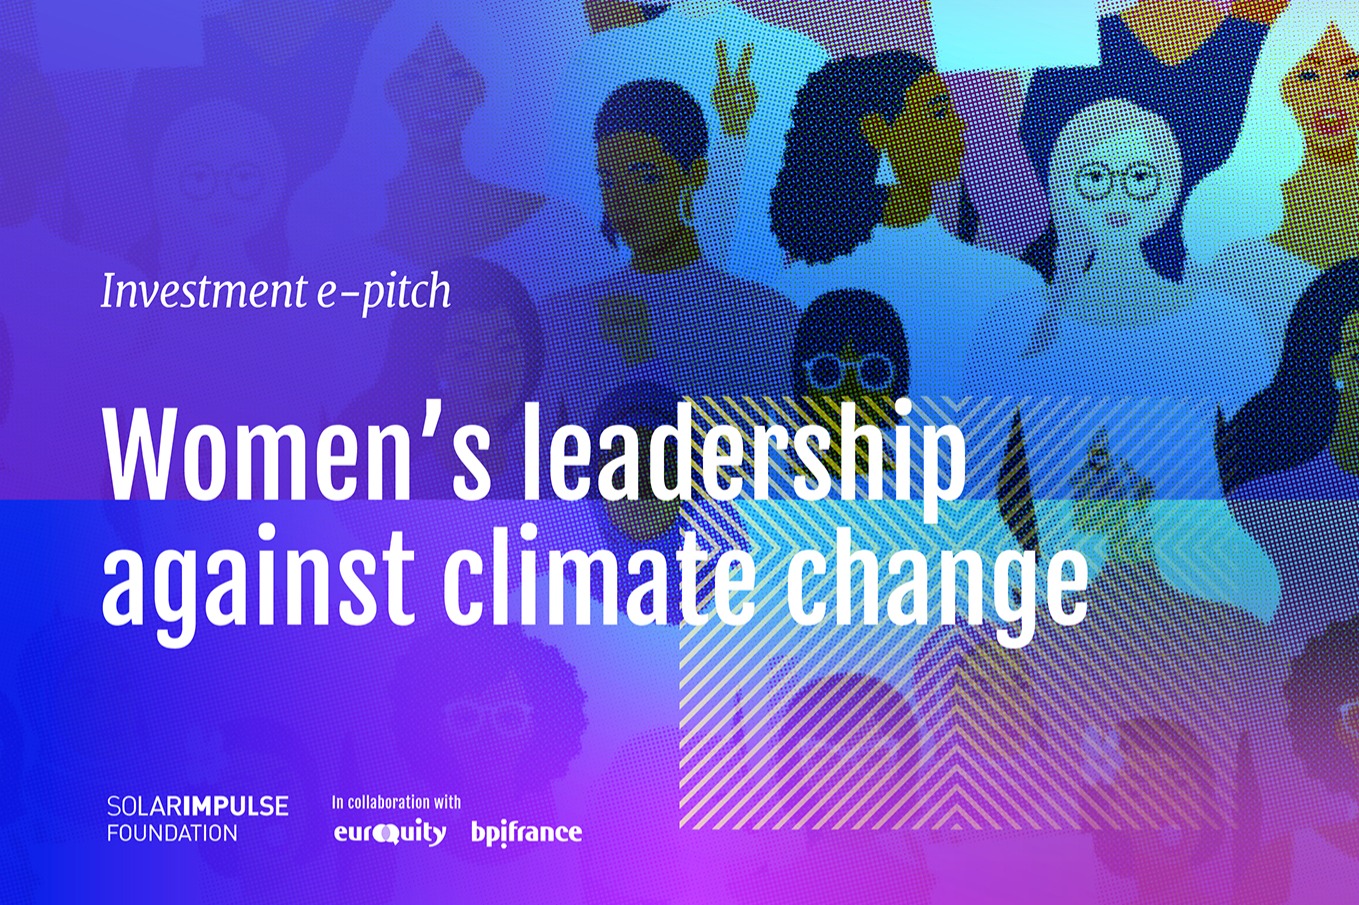 La leadership delle donne contro il cambiamento climatico